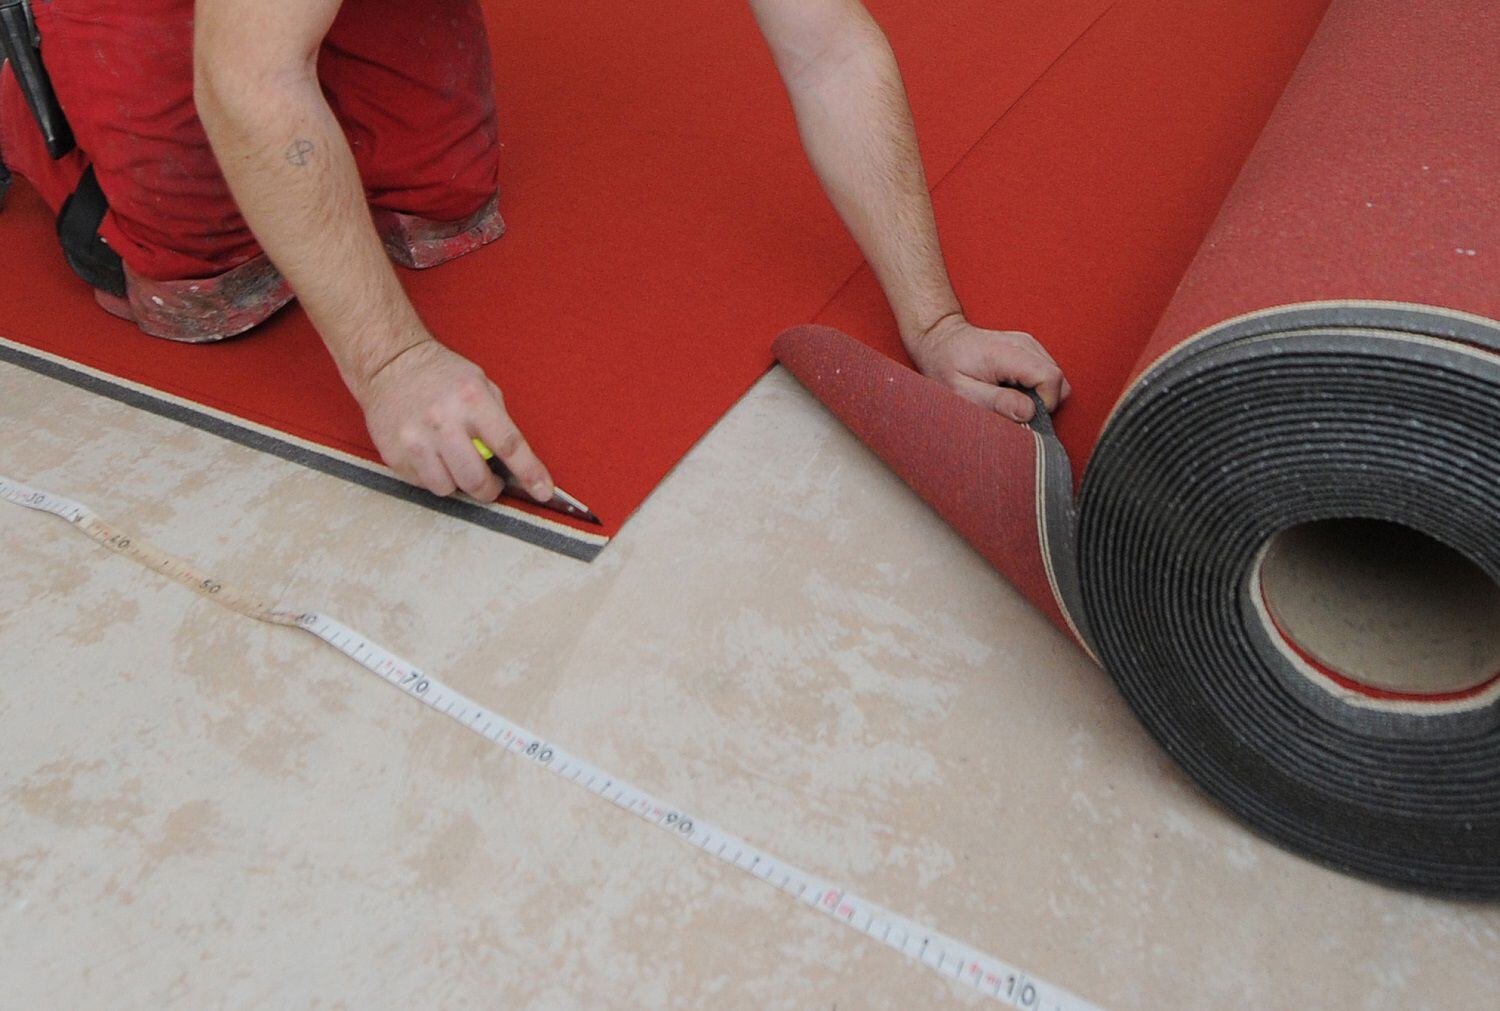 Las alfombras son una gran ayuda para contrarrestar el ruido de las pisadas.